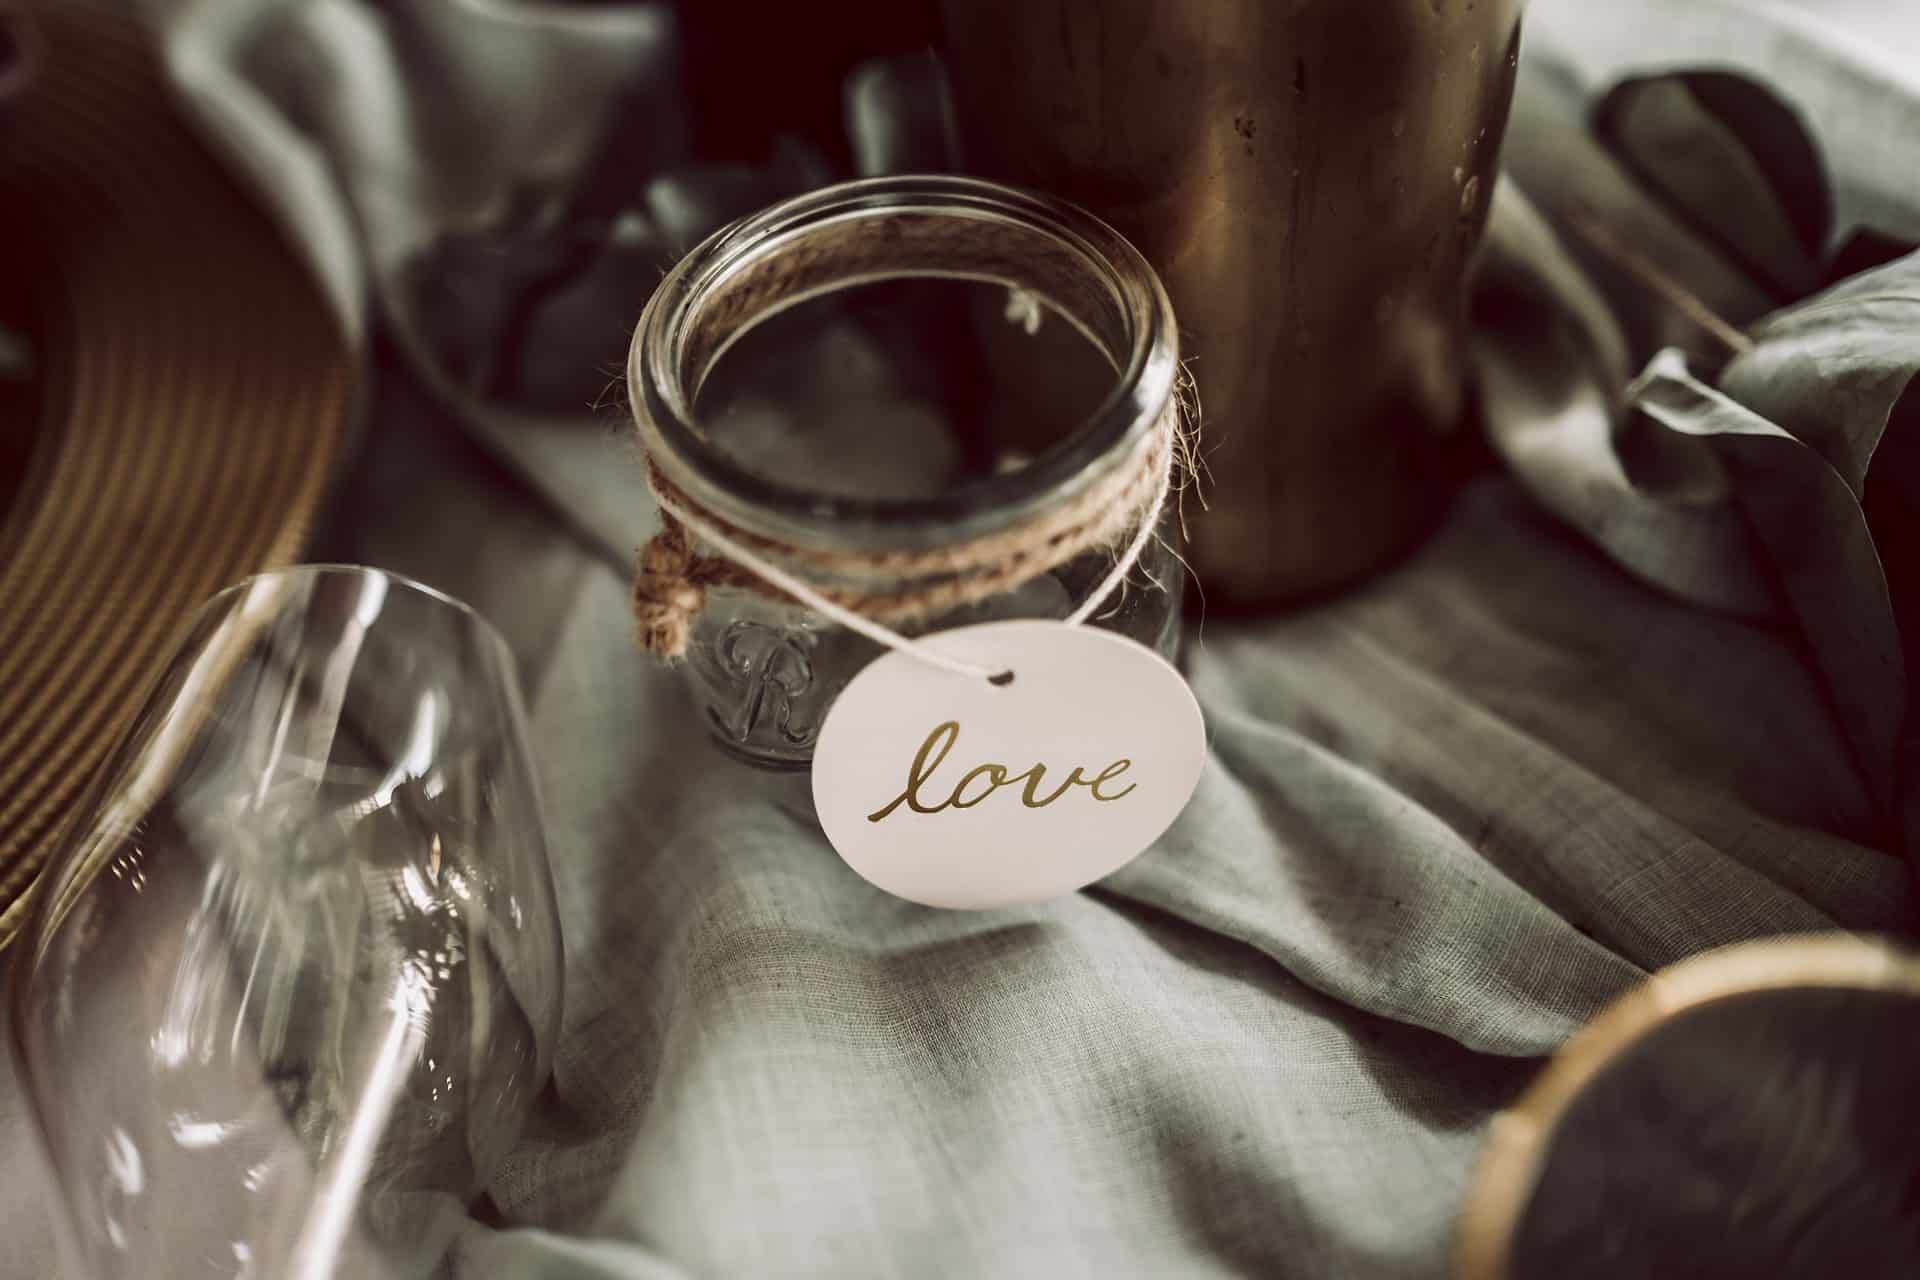 Ein Einmachglas mit einem Liebesetikett darauf.